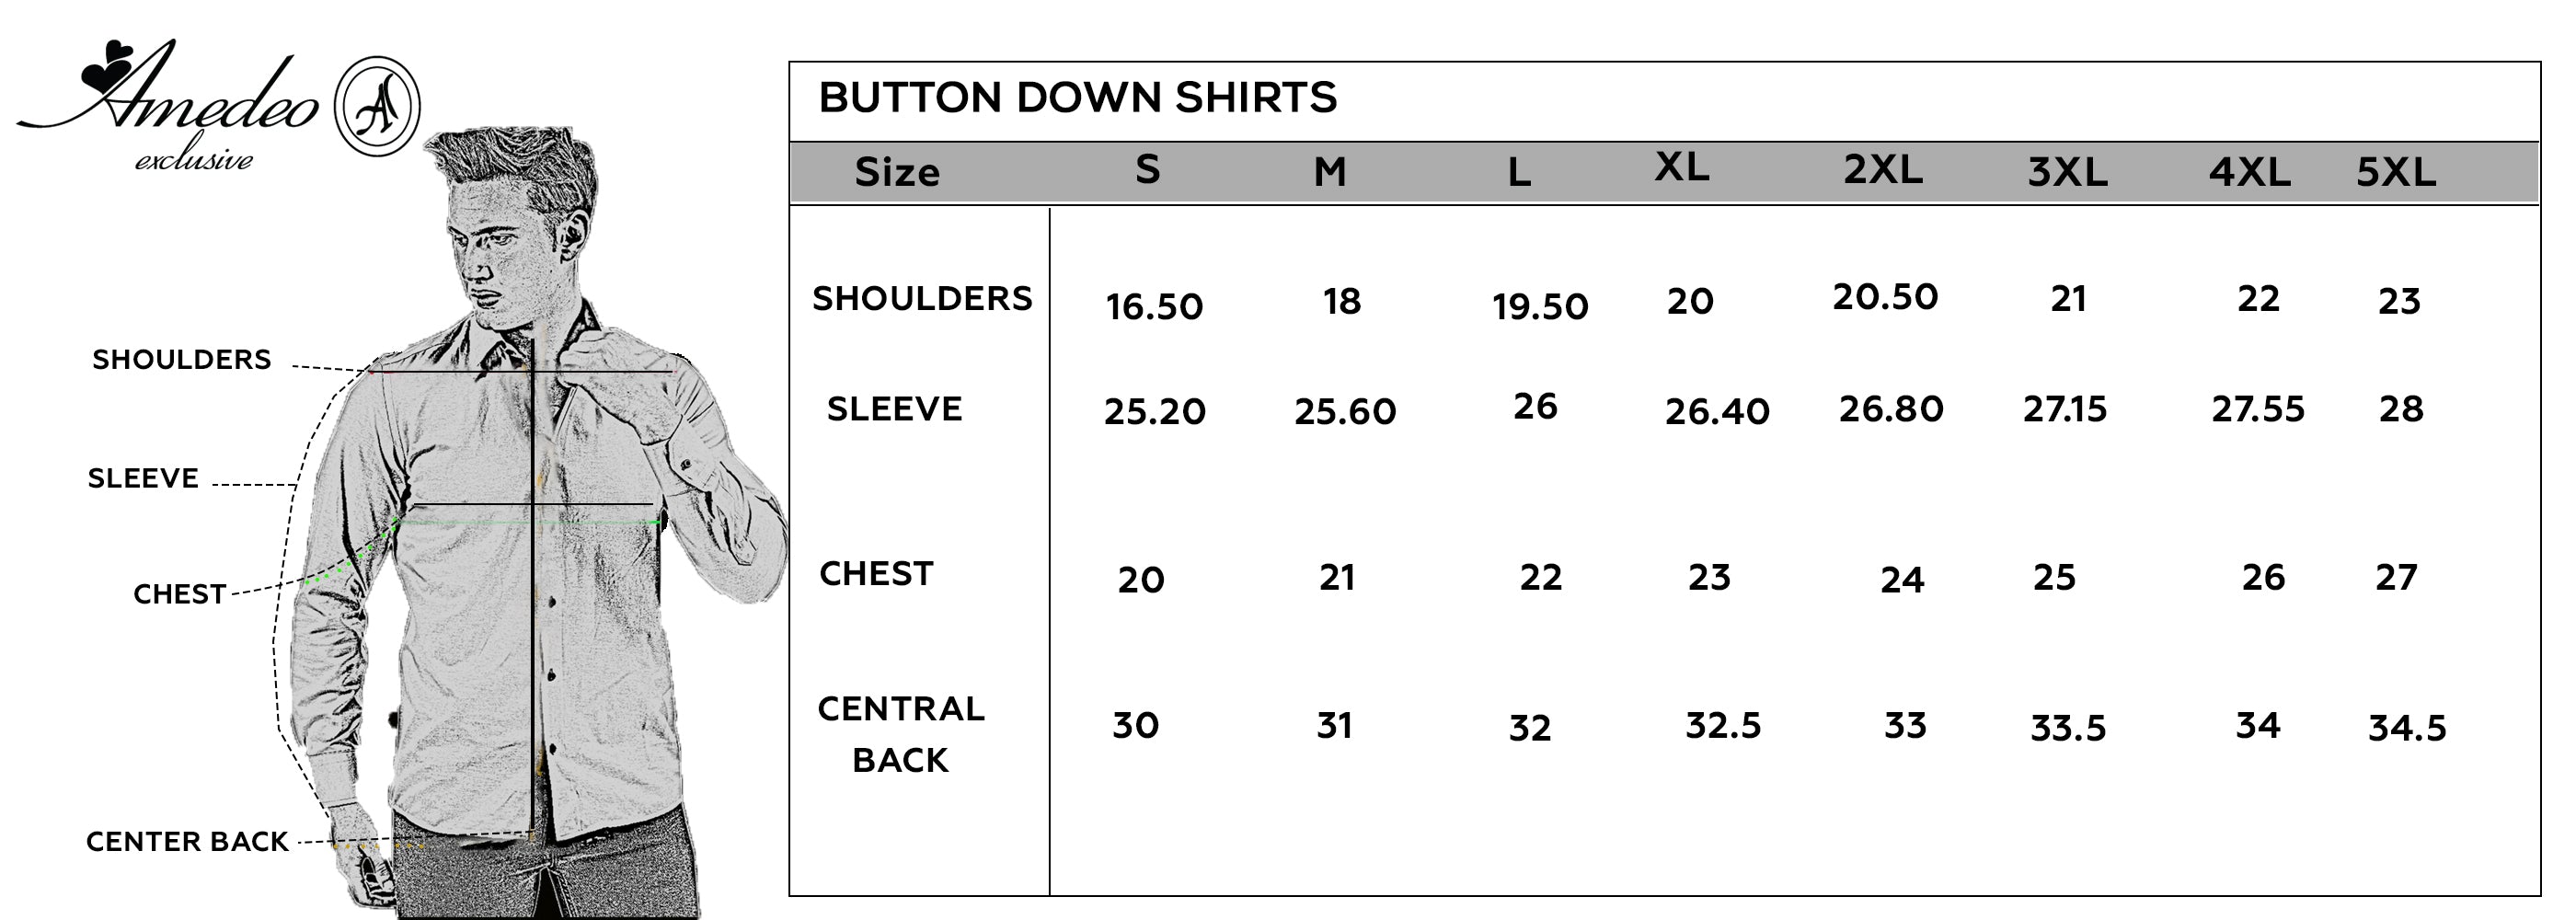 men’s dress shirt size chart